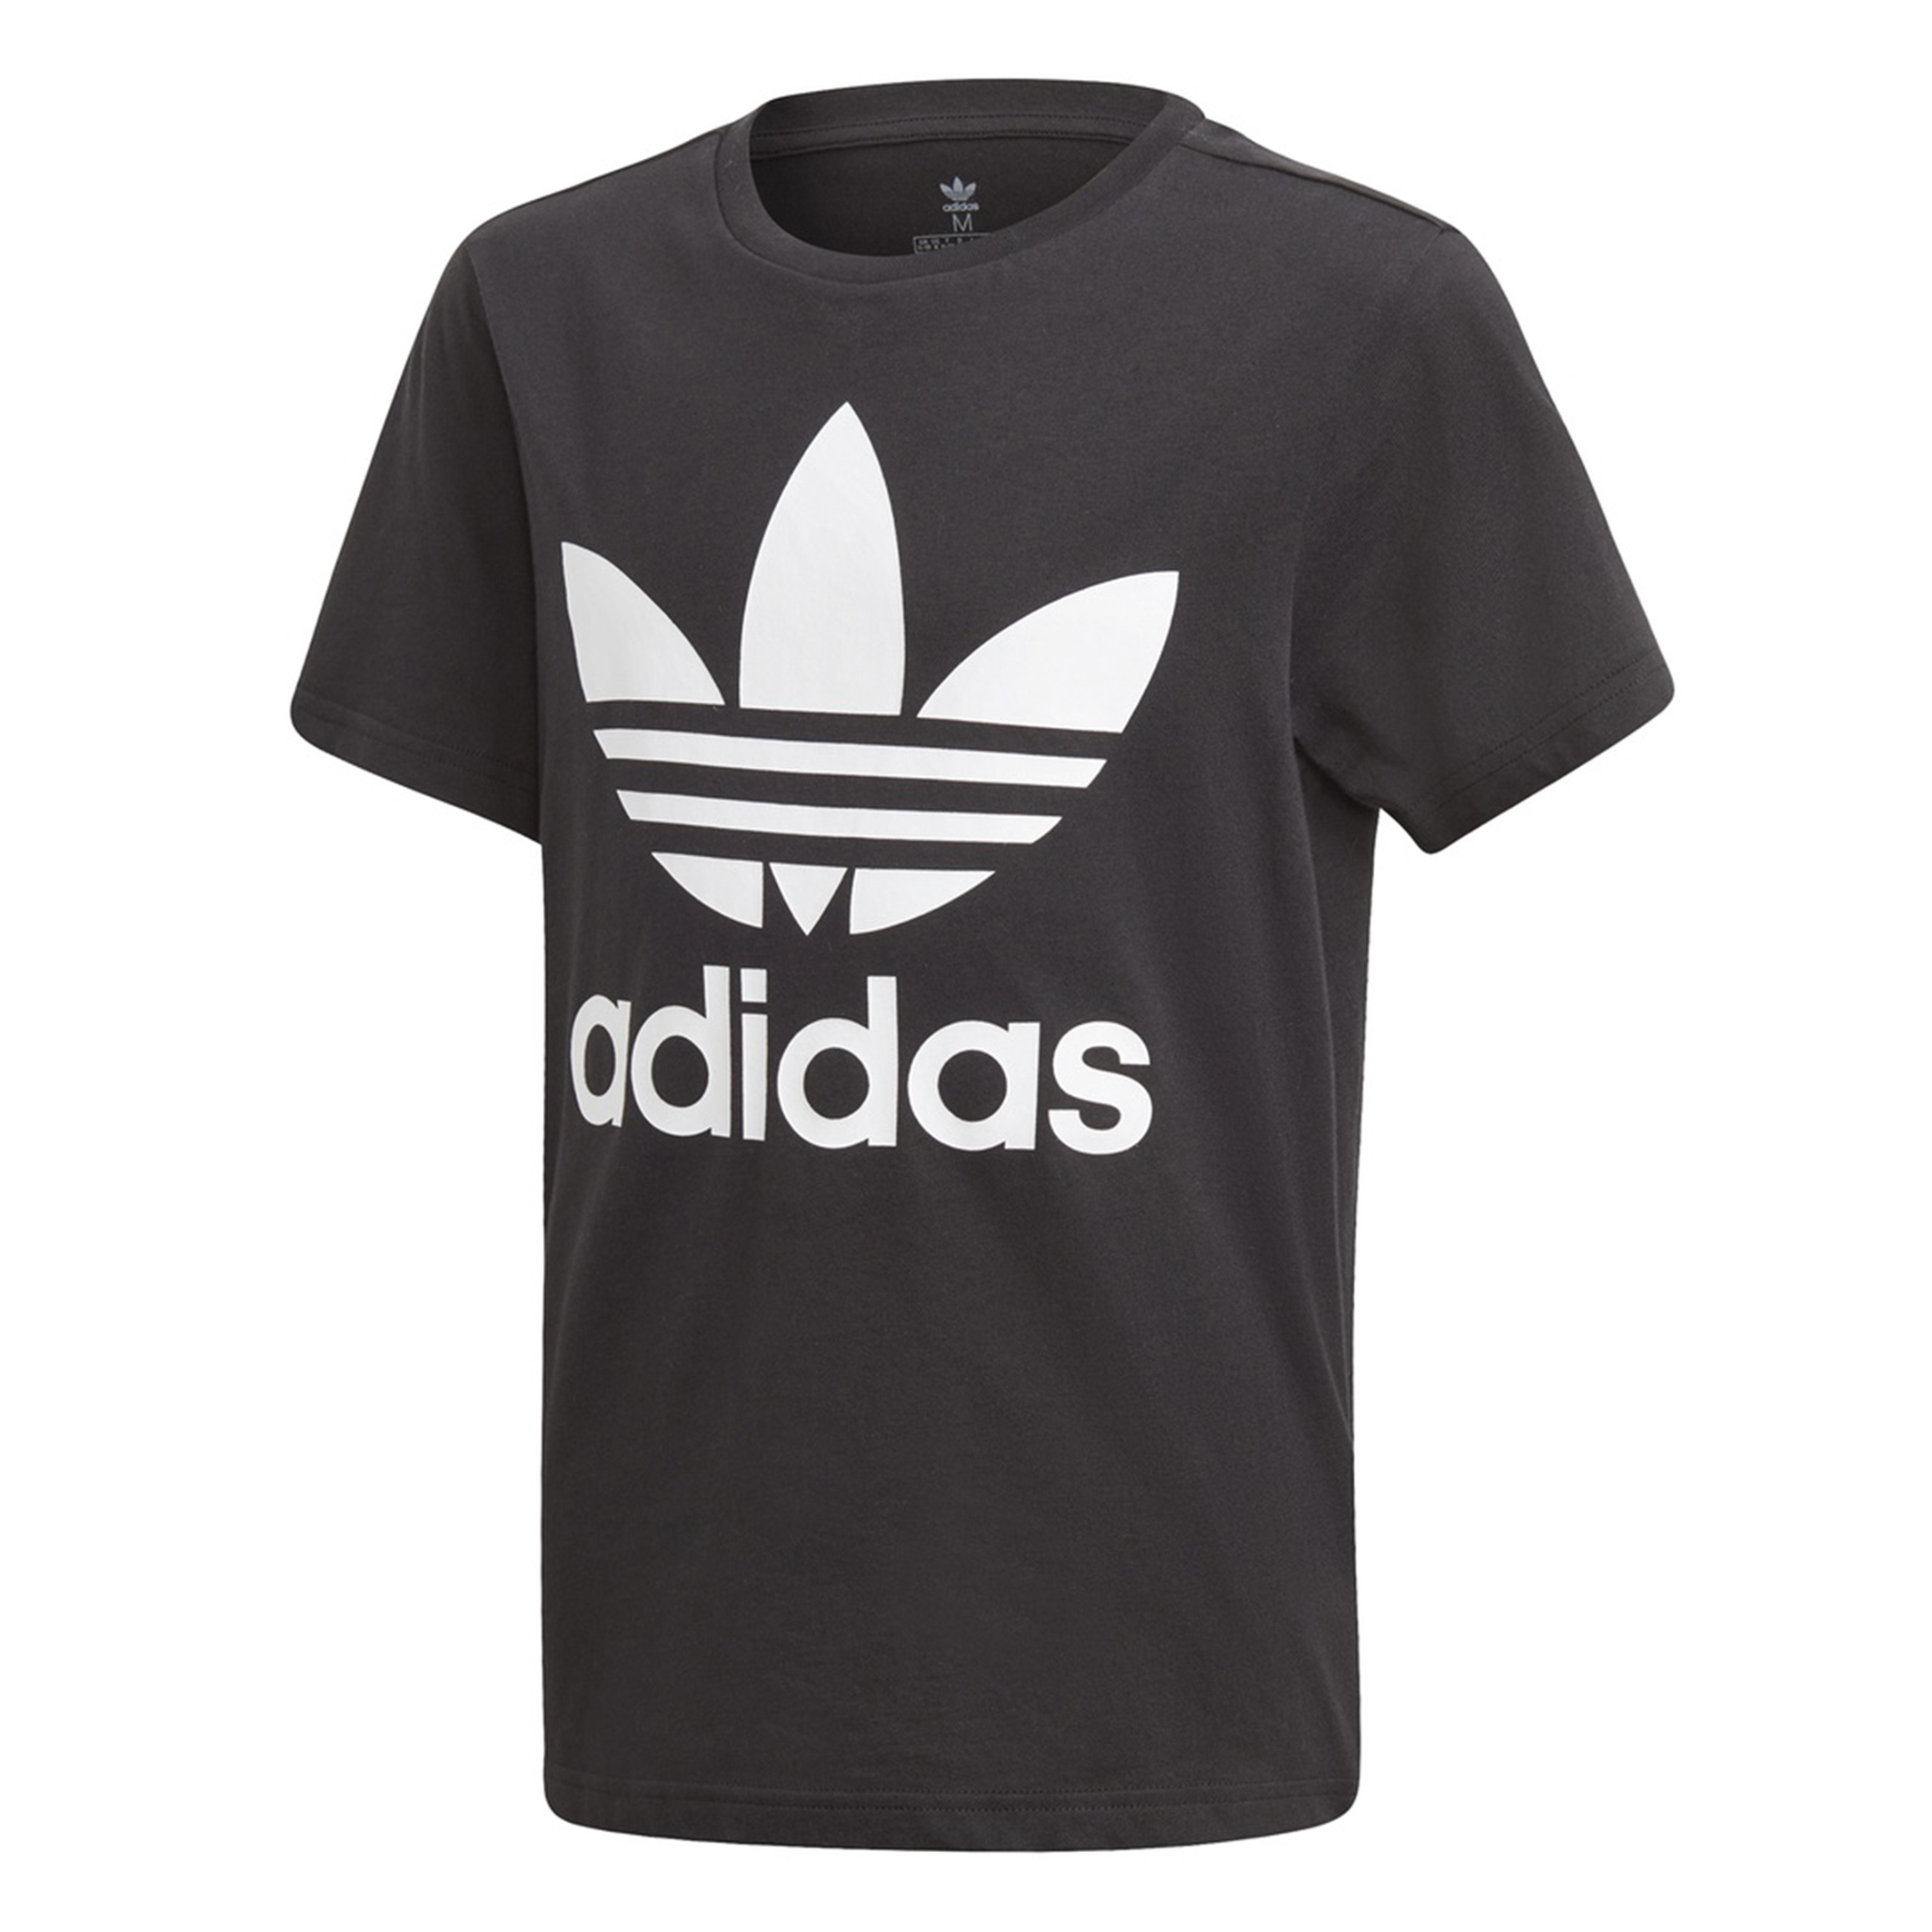 Адидас уфа. Футболка adidas Trefoil. Футболки адидас 2022. Футболка adidas Trefoil t-Shirt. Футболка adidas Originals Originals TREFO.